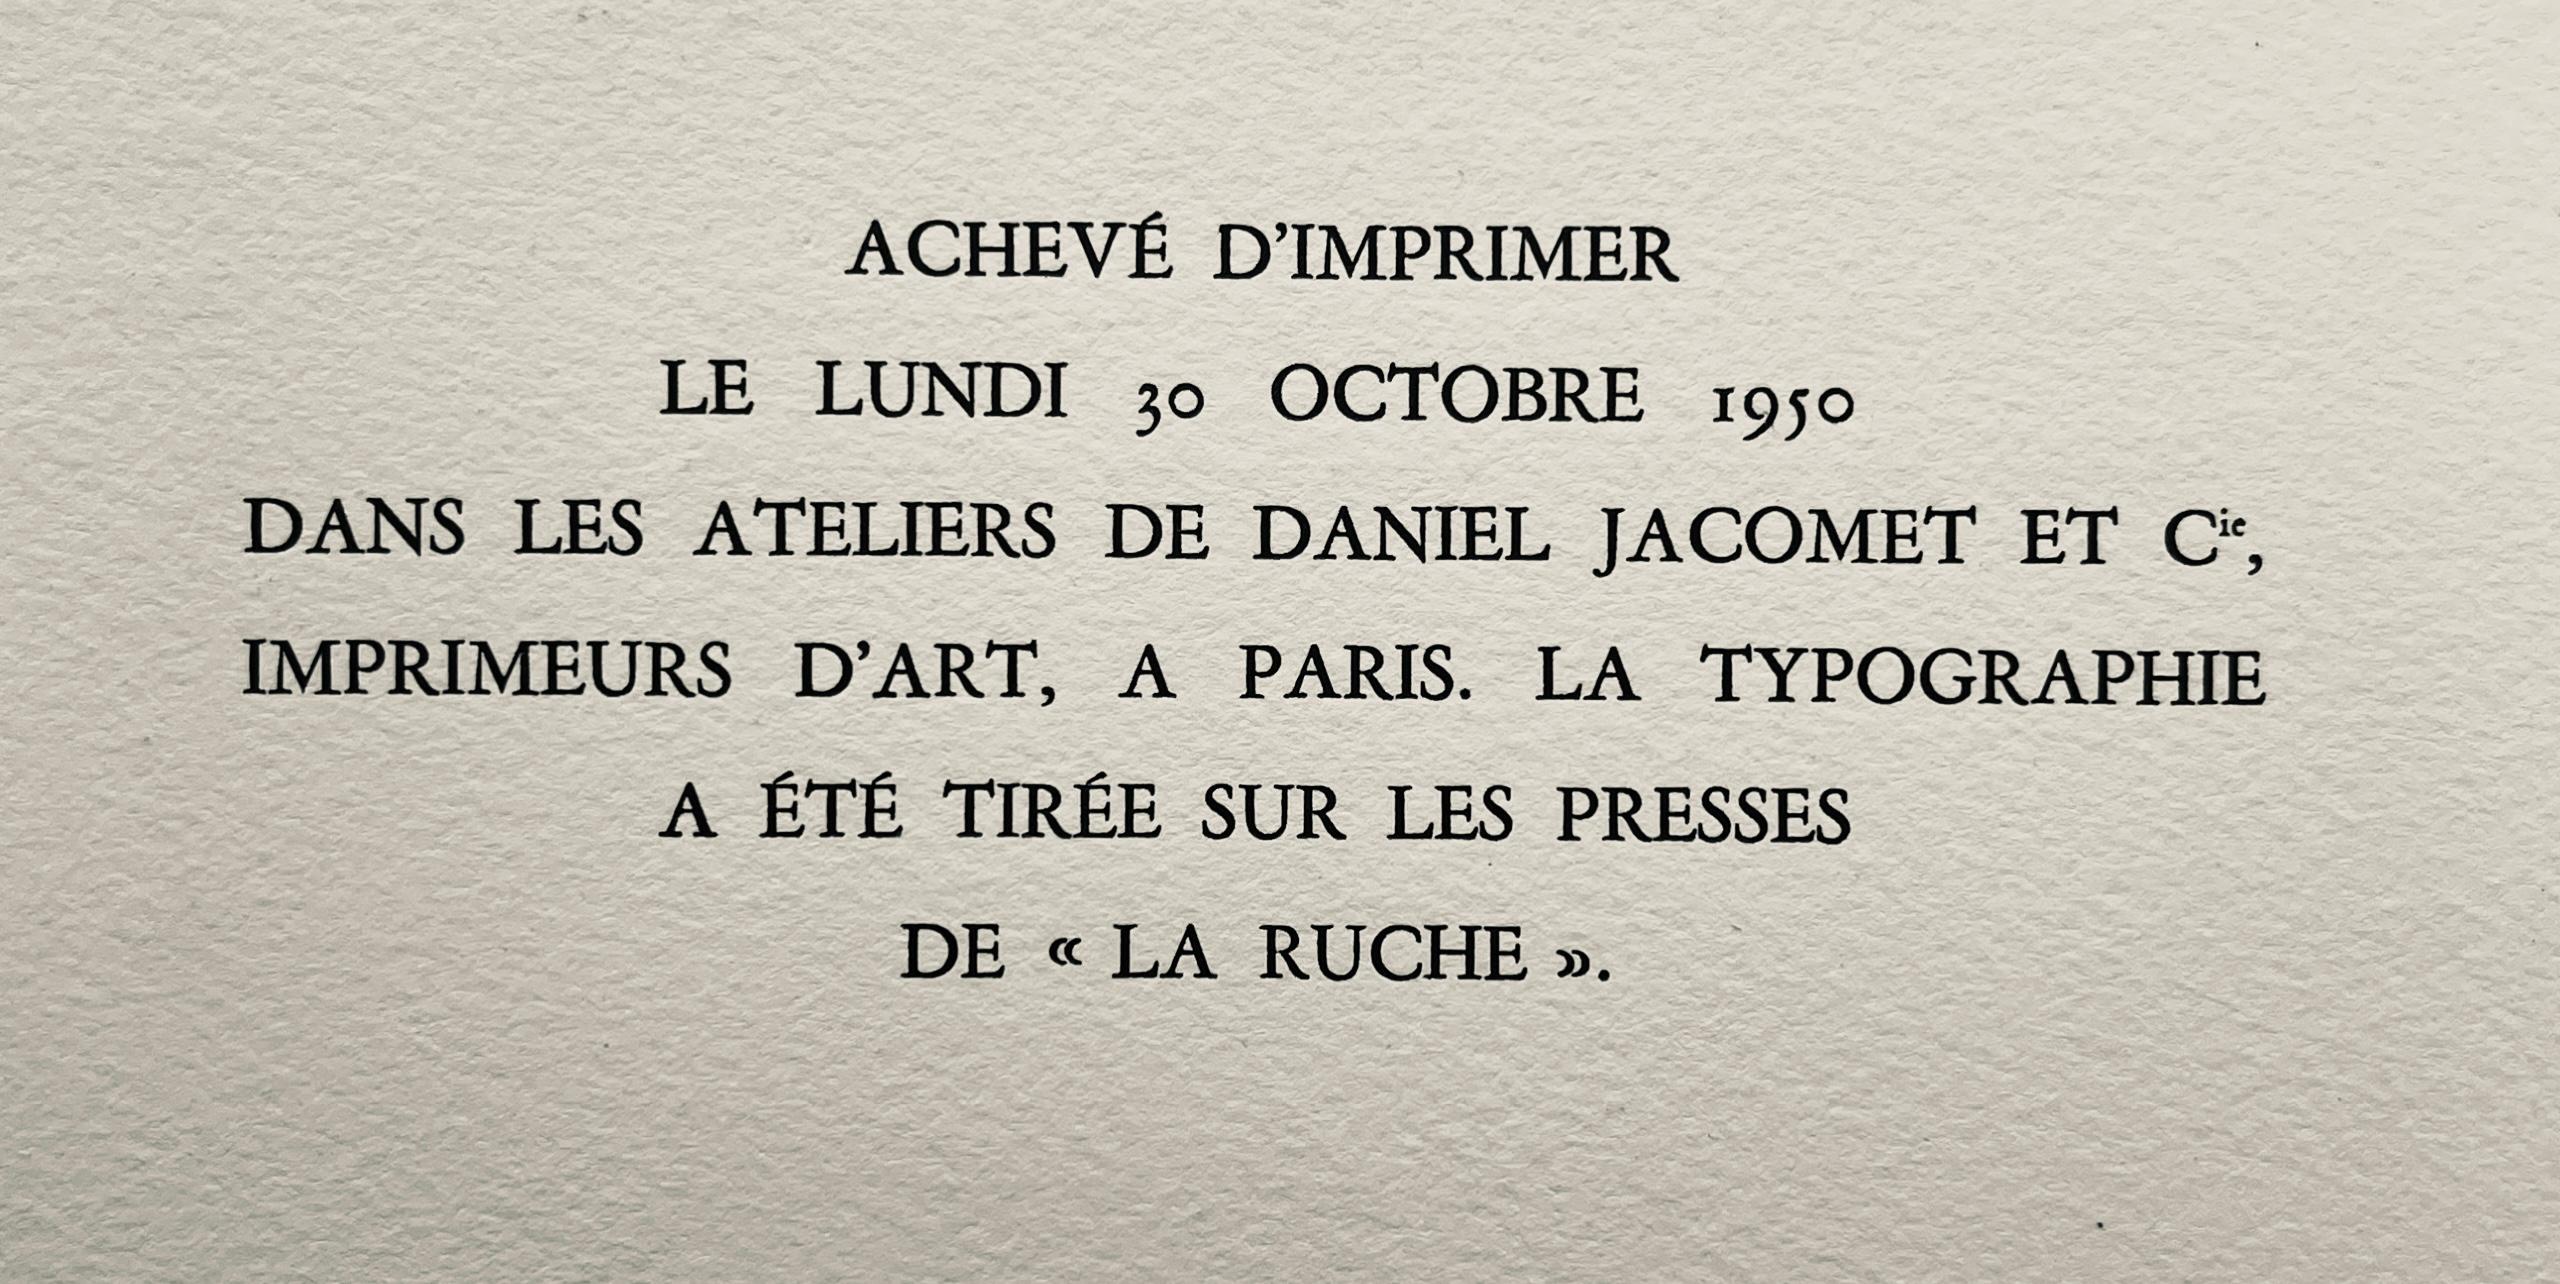 Toulouse-Lautrec, Composition, Yvette Guilbert vue par Toulouse-Lautrec (after) For Sale 4